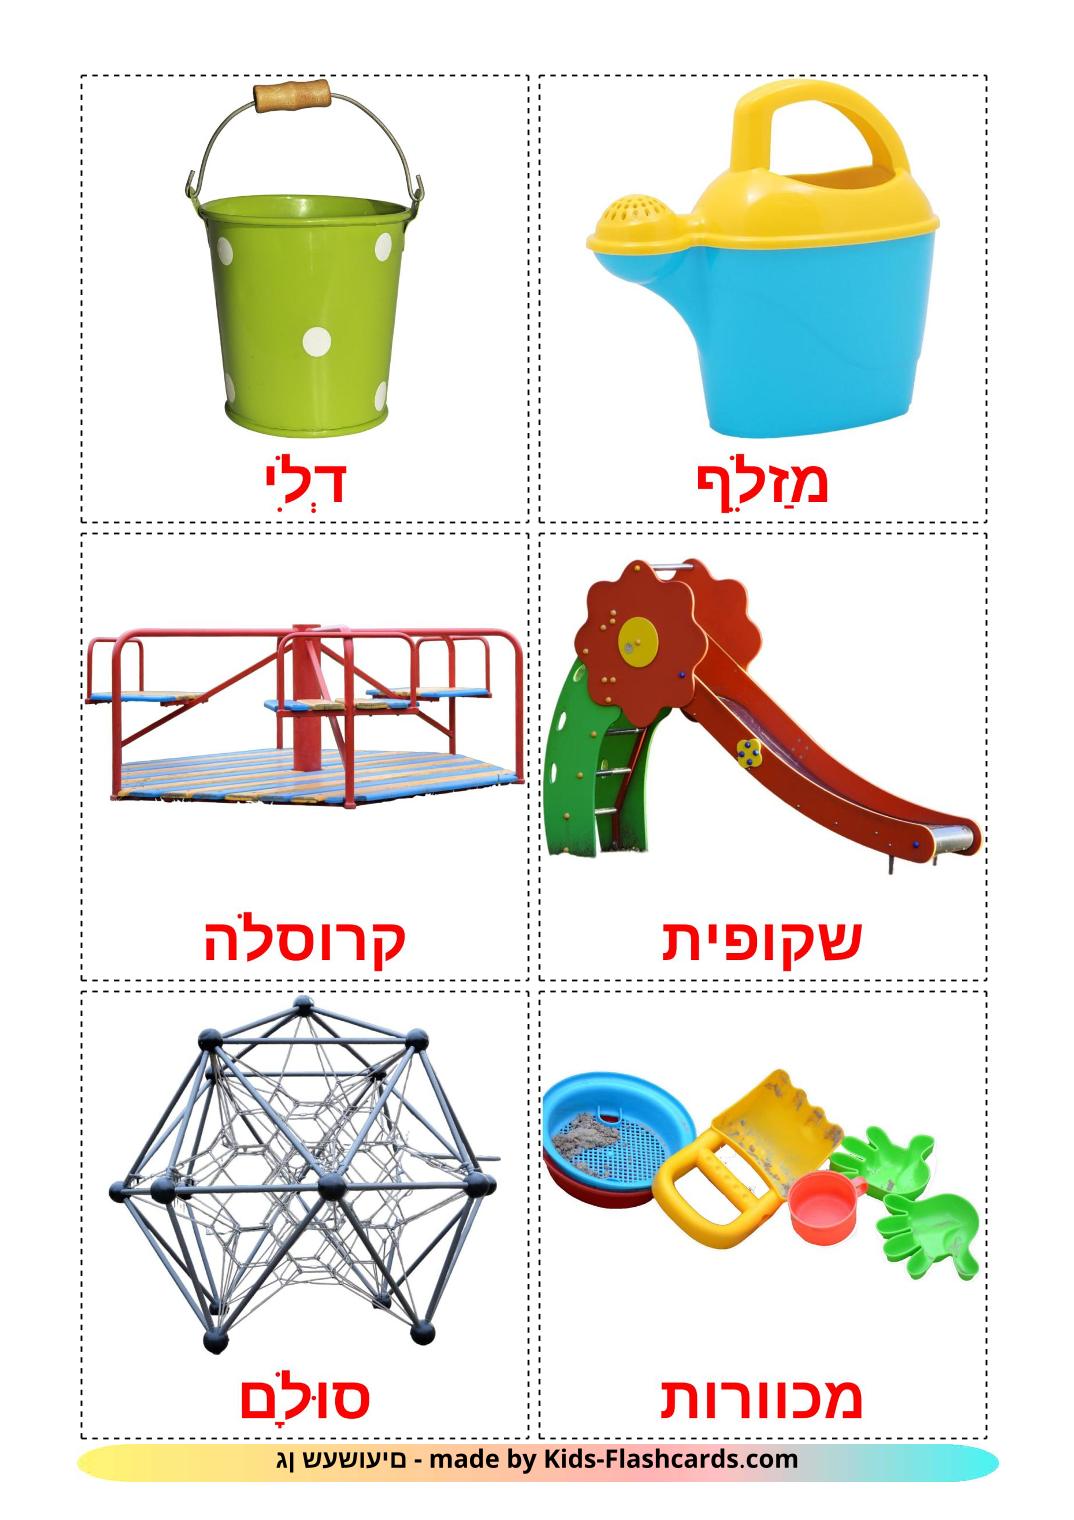 Parque infantil - 13 fichas de hebreo para imprimir gratis 